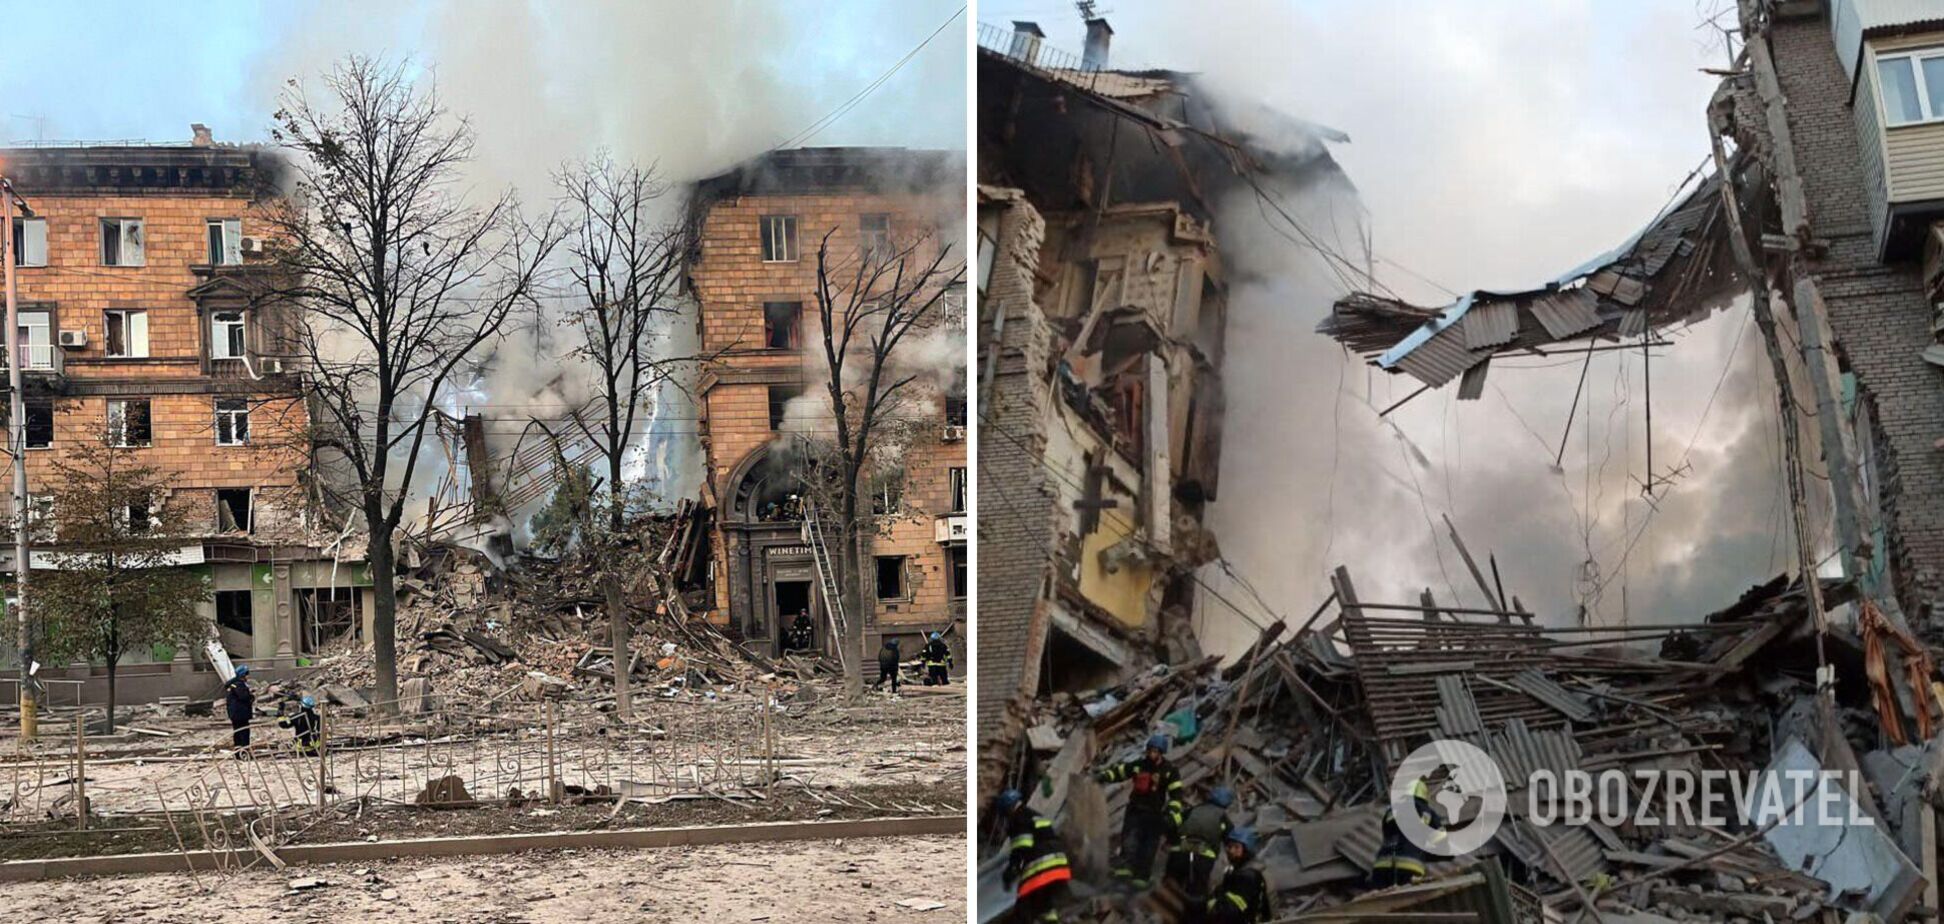 З-під завалів дістали ще два тіла: зросла кількість жертв ракетного удару РФ по будинках у Запоріжжі. Фото і відео 